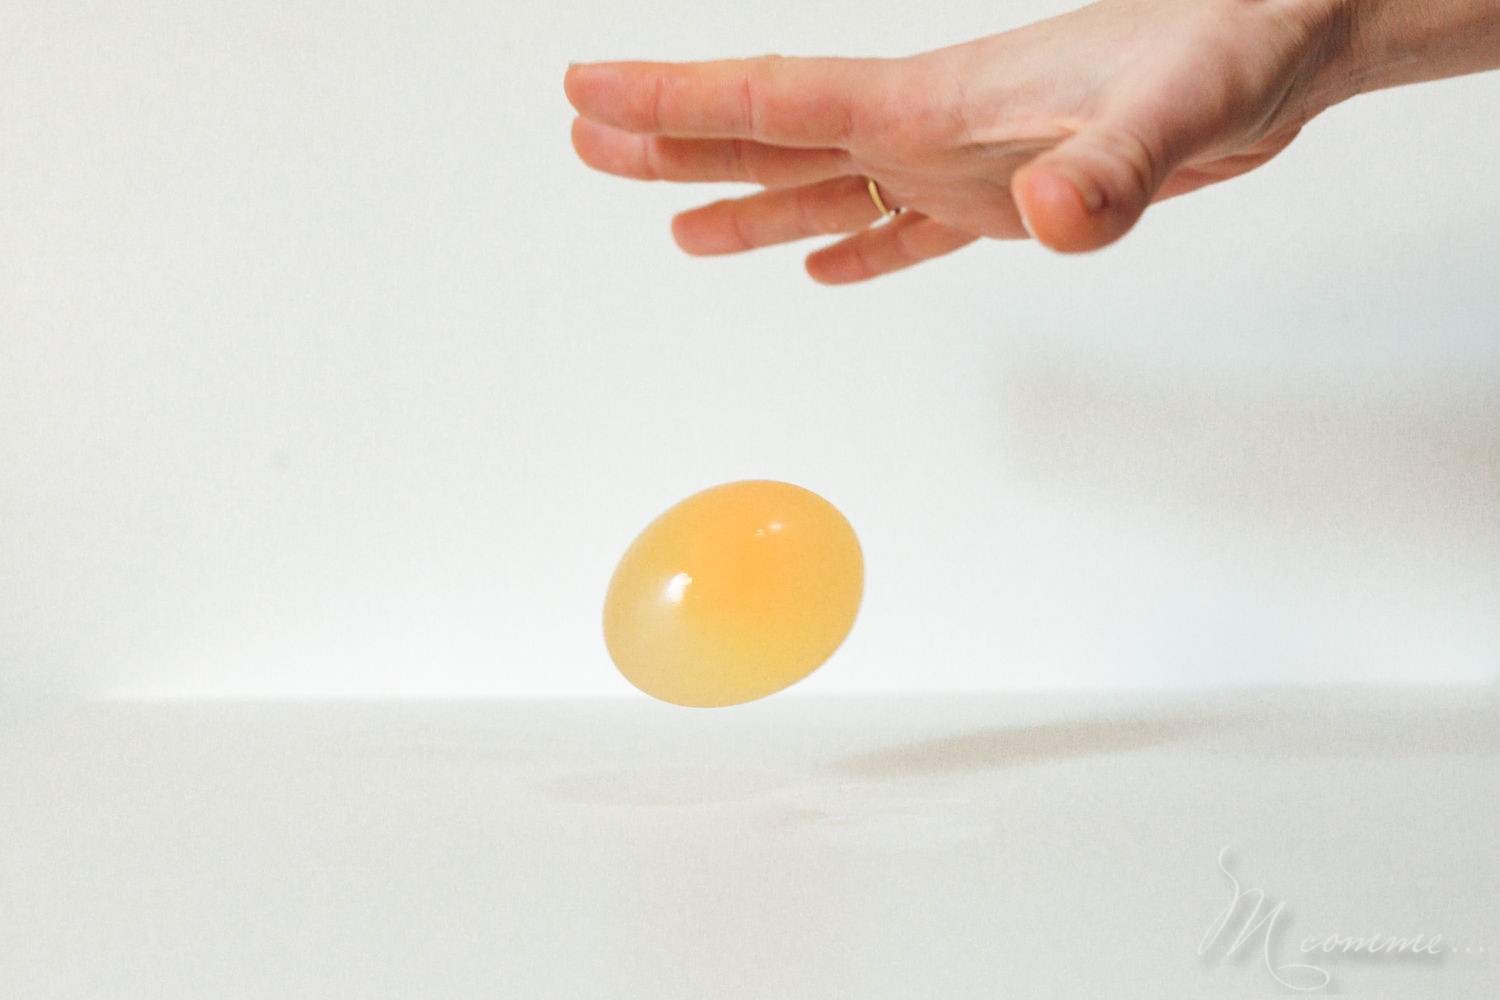 Avez-vous déjà essayé de faire rebondir un œuf cru ? Je vous propose une expérience sympa à faire avec les enfants : 1 œuf qui rebondit ! #oeuf #expérience #experienceenfants #experiencesscientifiques #enfants